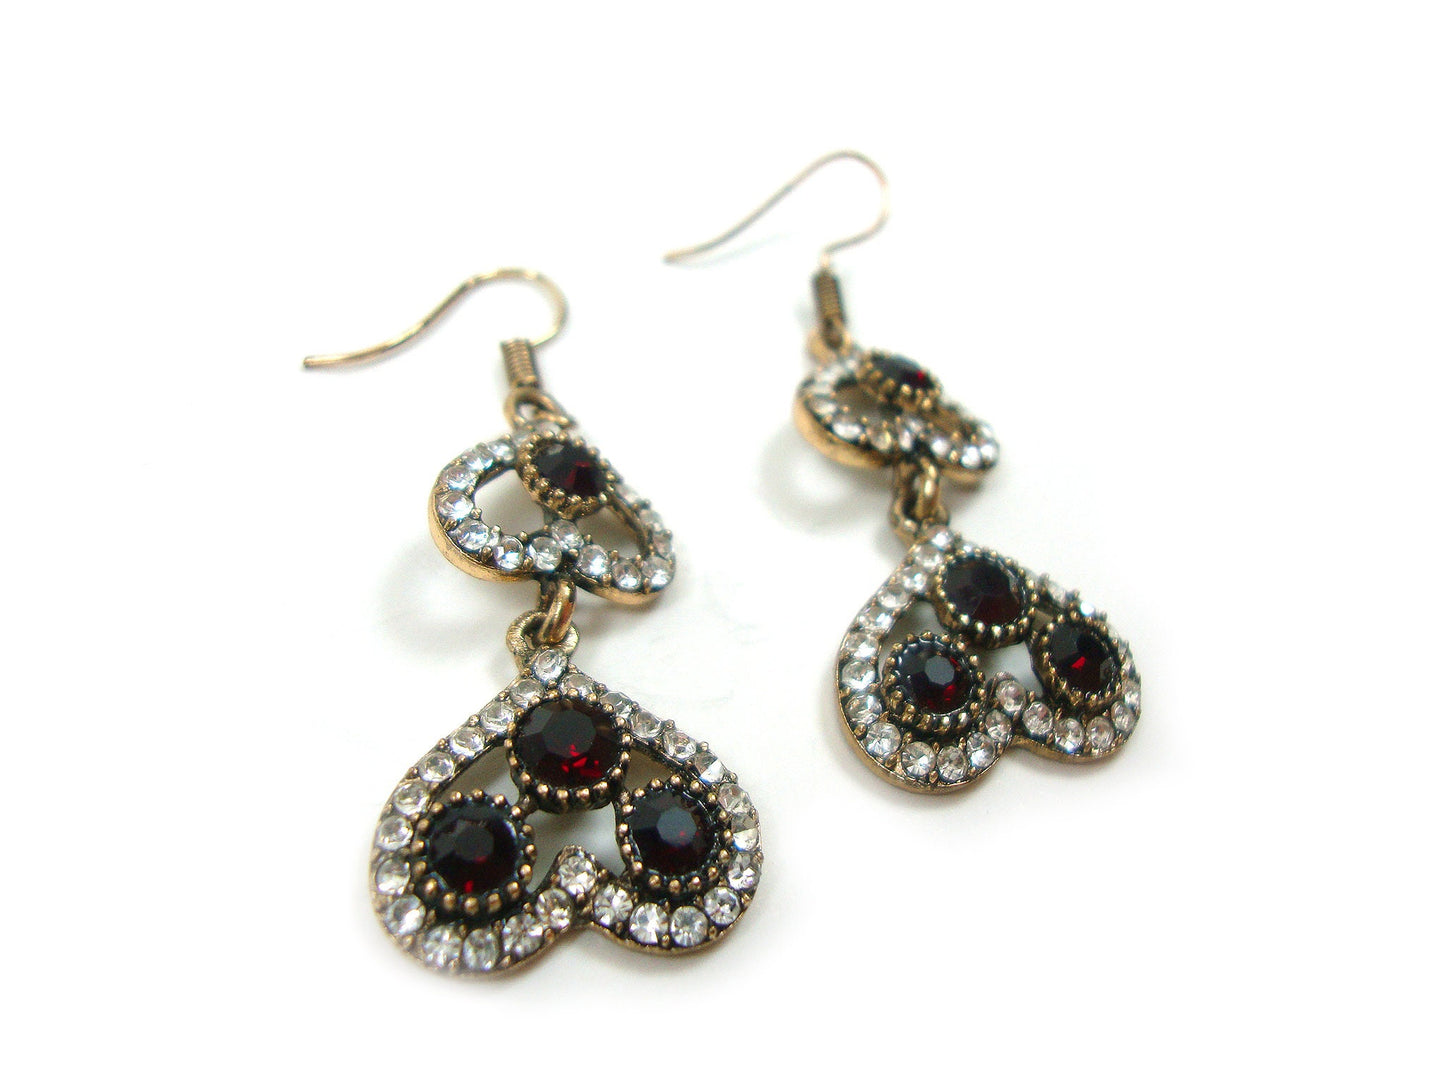 Byzantine Earrings, Modern Style Dark Red Crystal Stones Dangle Heart Shape Earrings, Ethnic Antique Earrings, Greek Turkish Earrings Dangle